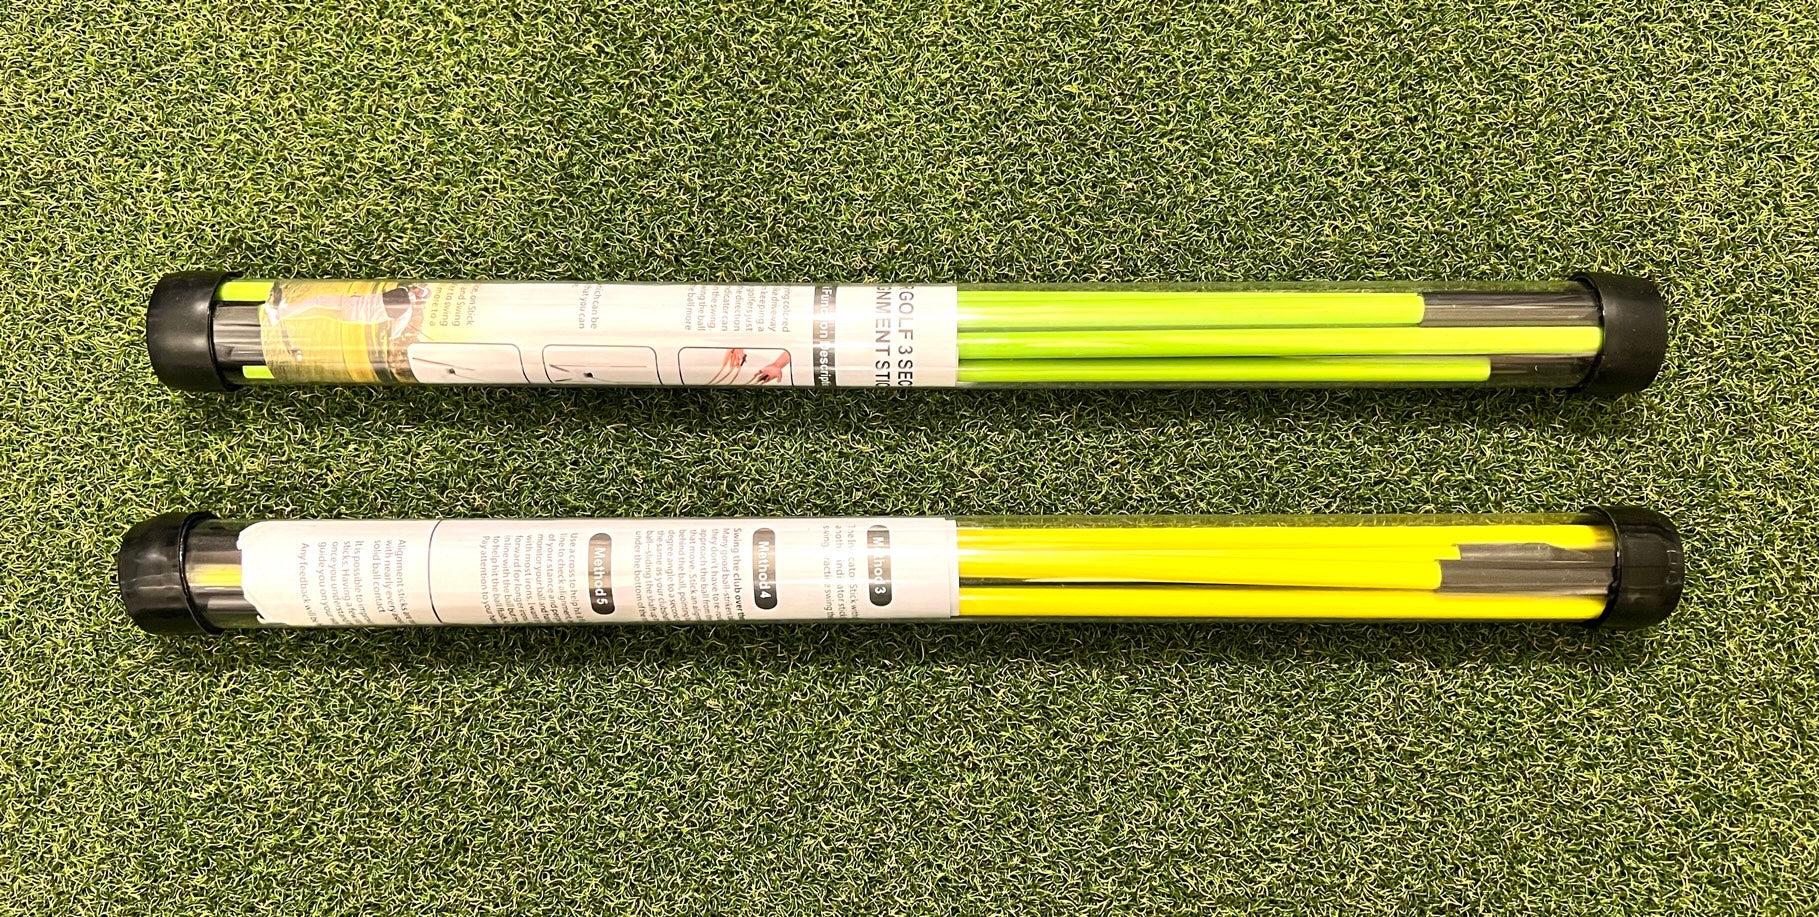 Bâtons d'alignement de golf pliables à 3 sections avec instructions